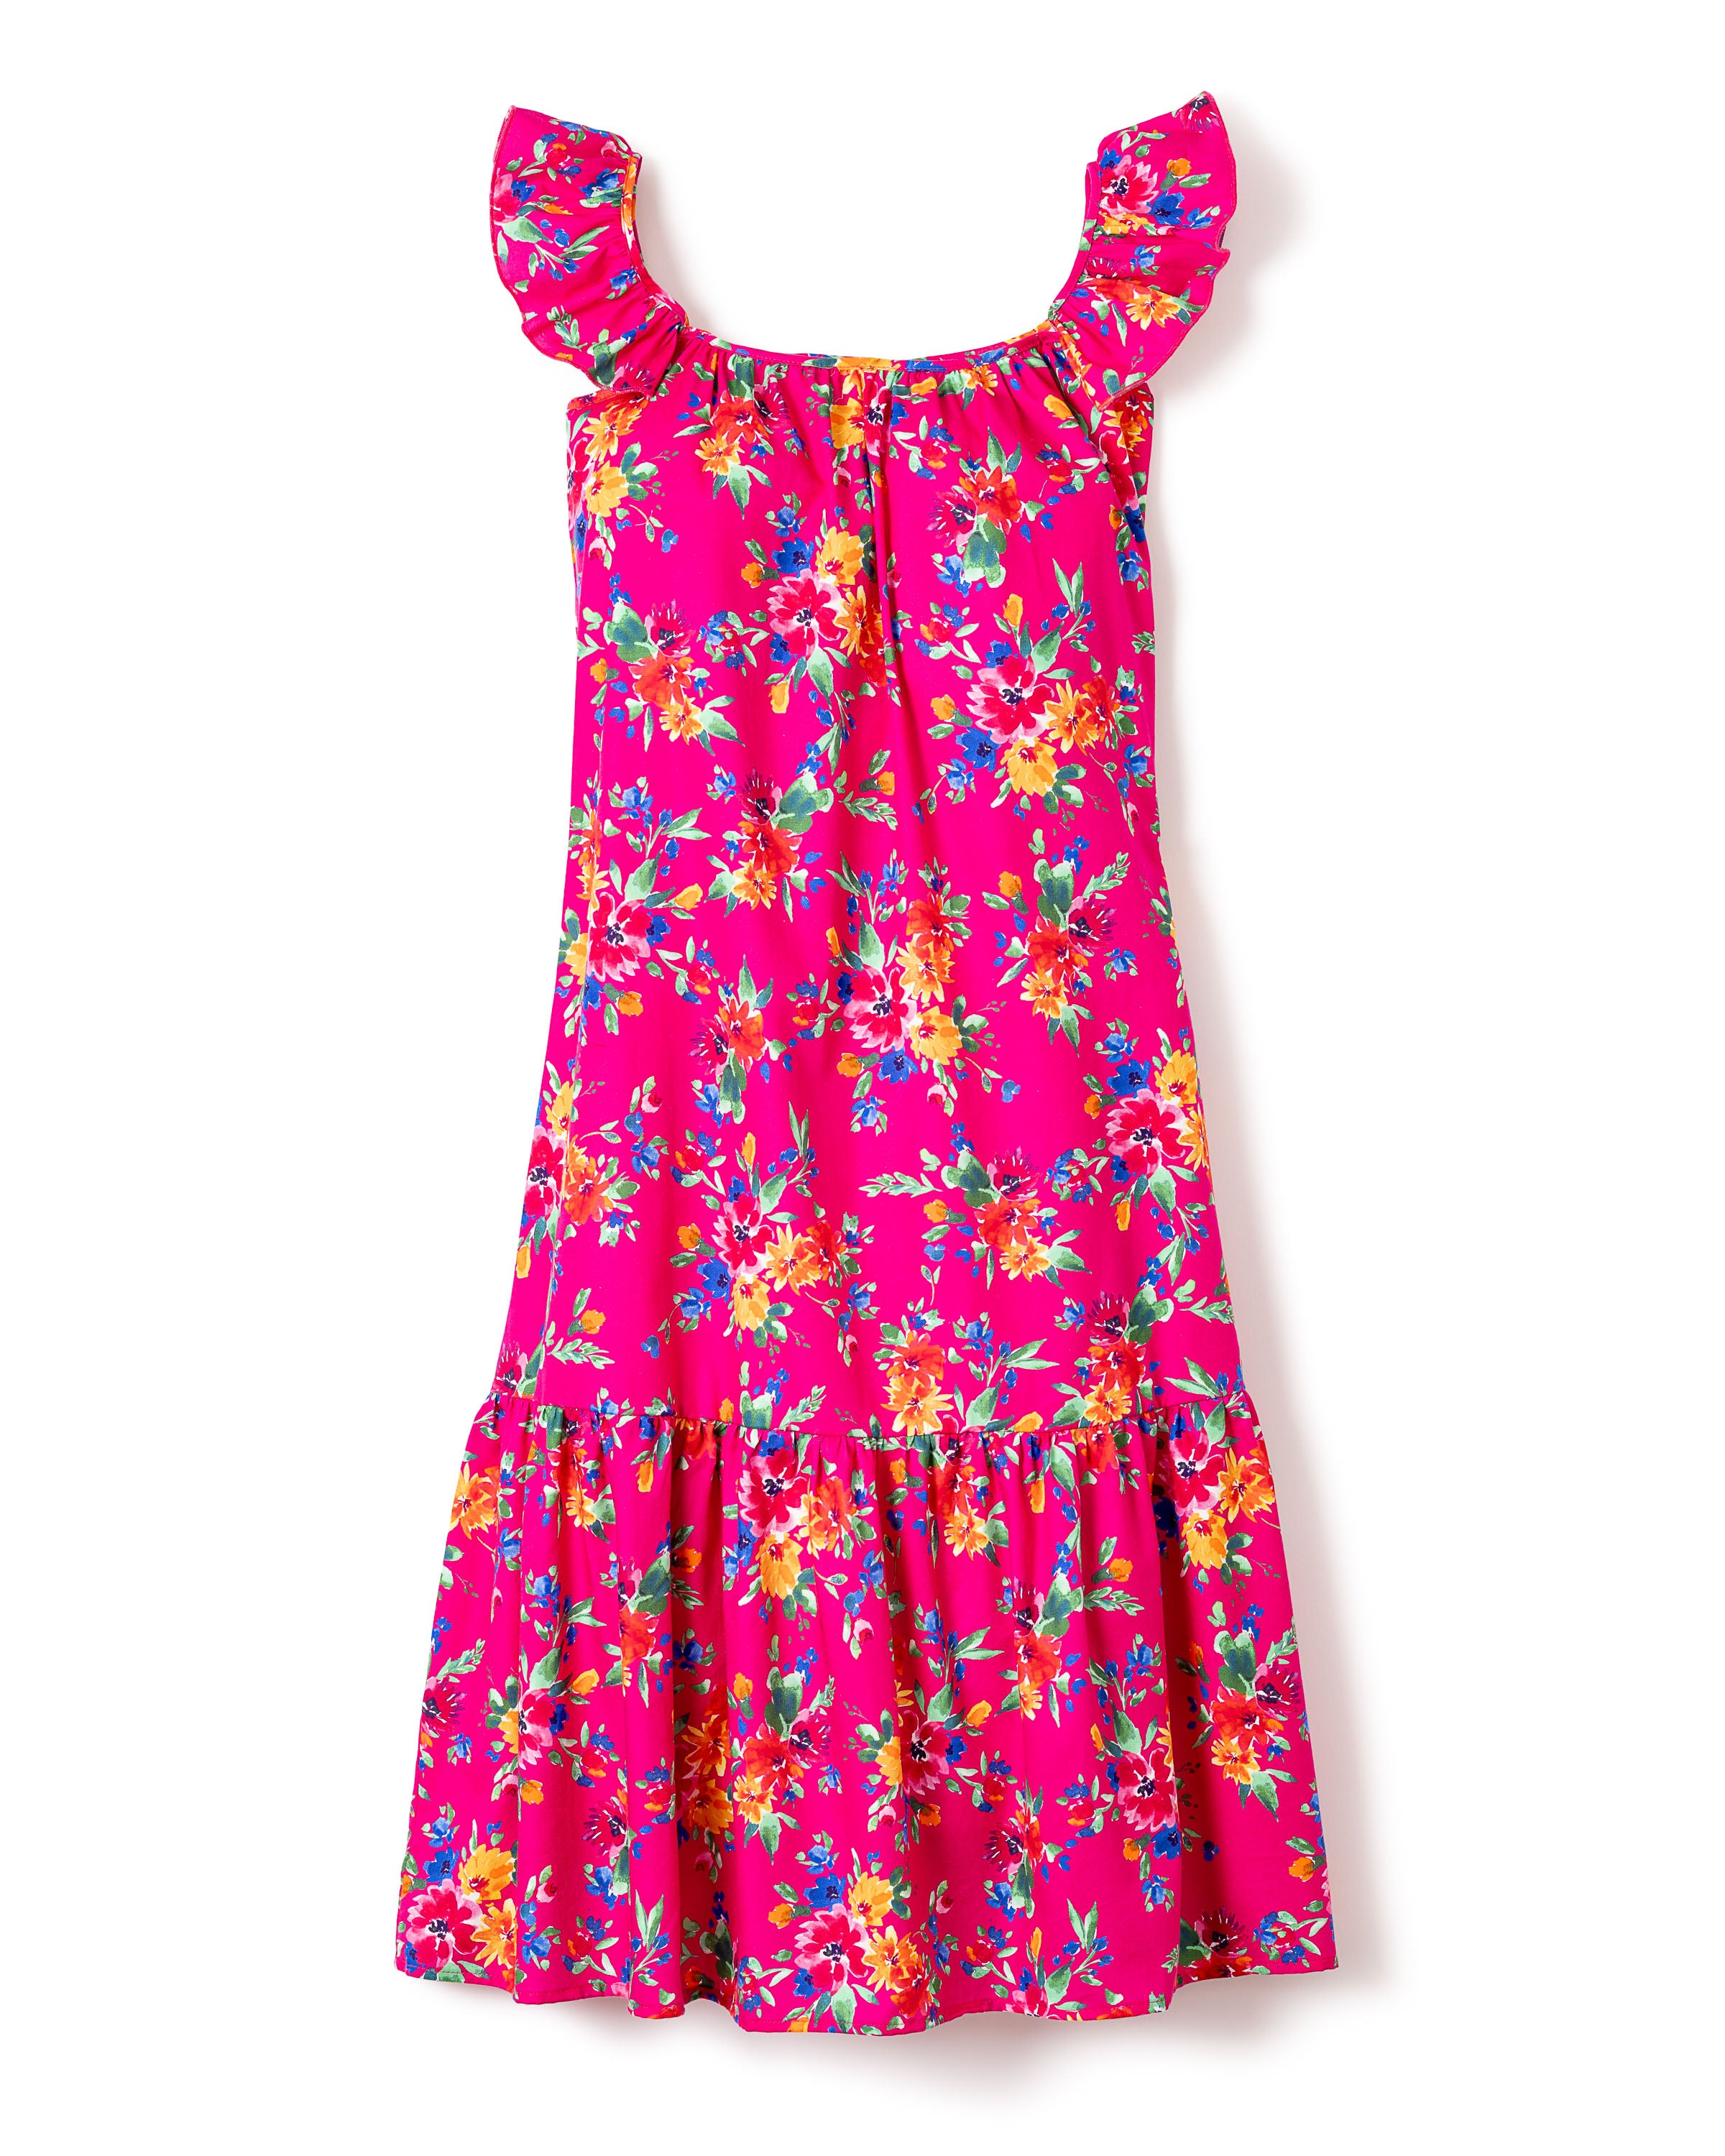 Women's Twill Celeste Dress in Summer Blooms